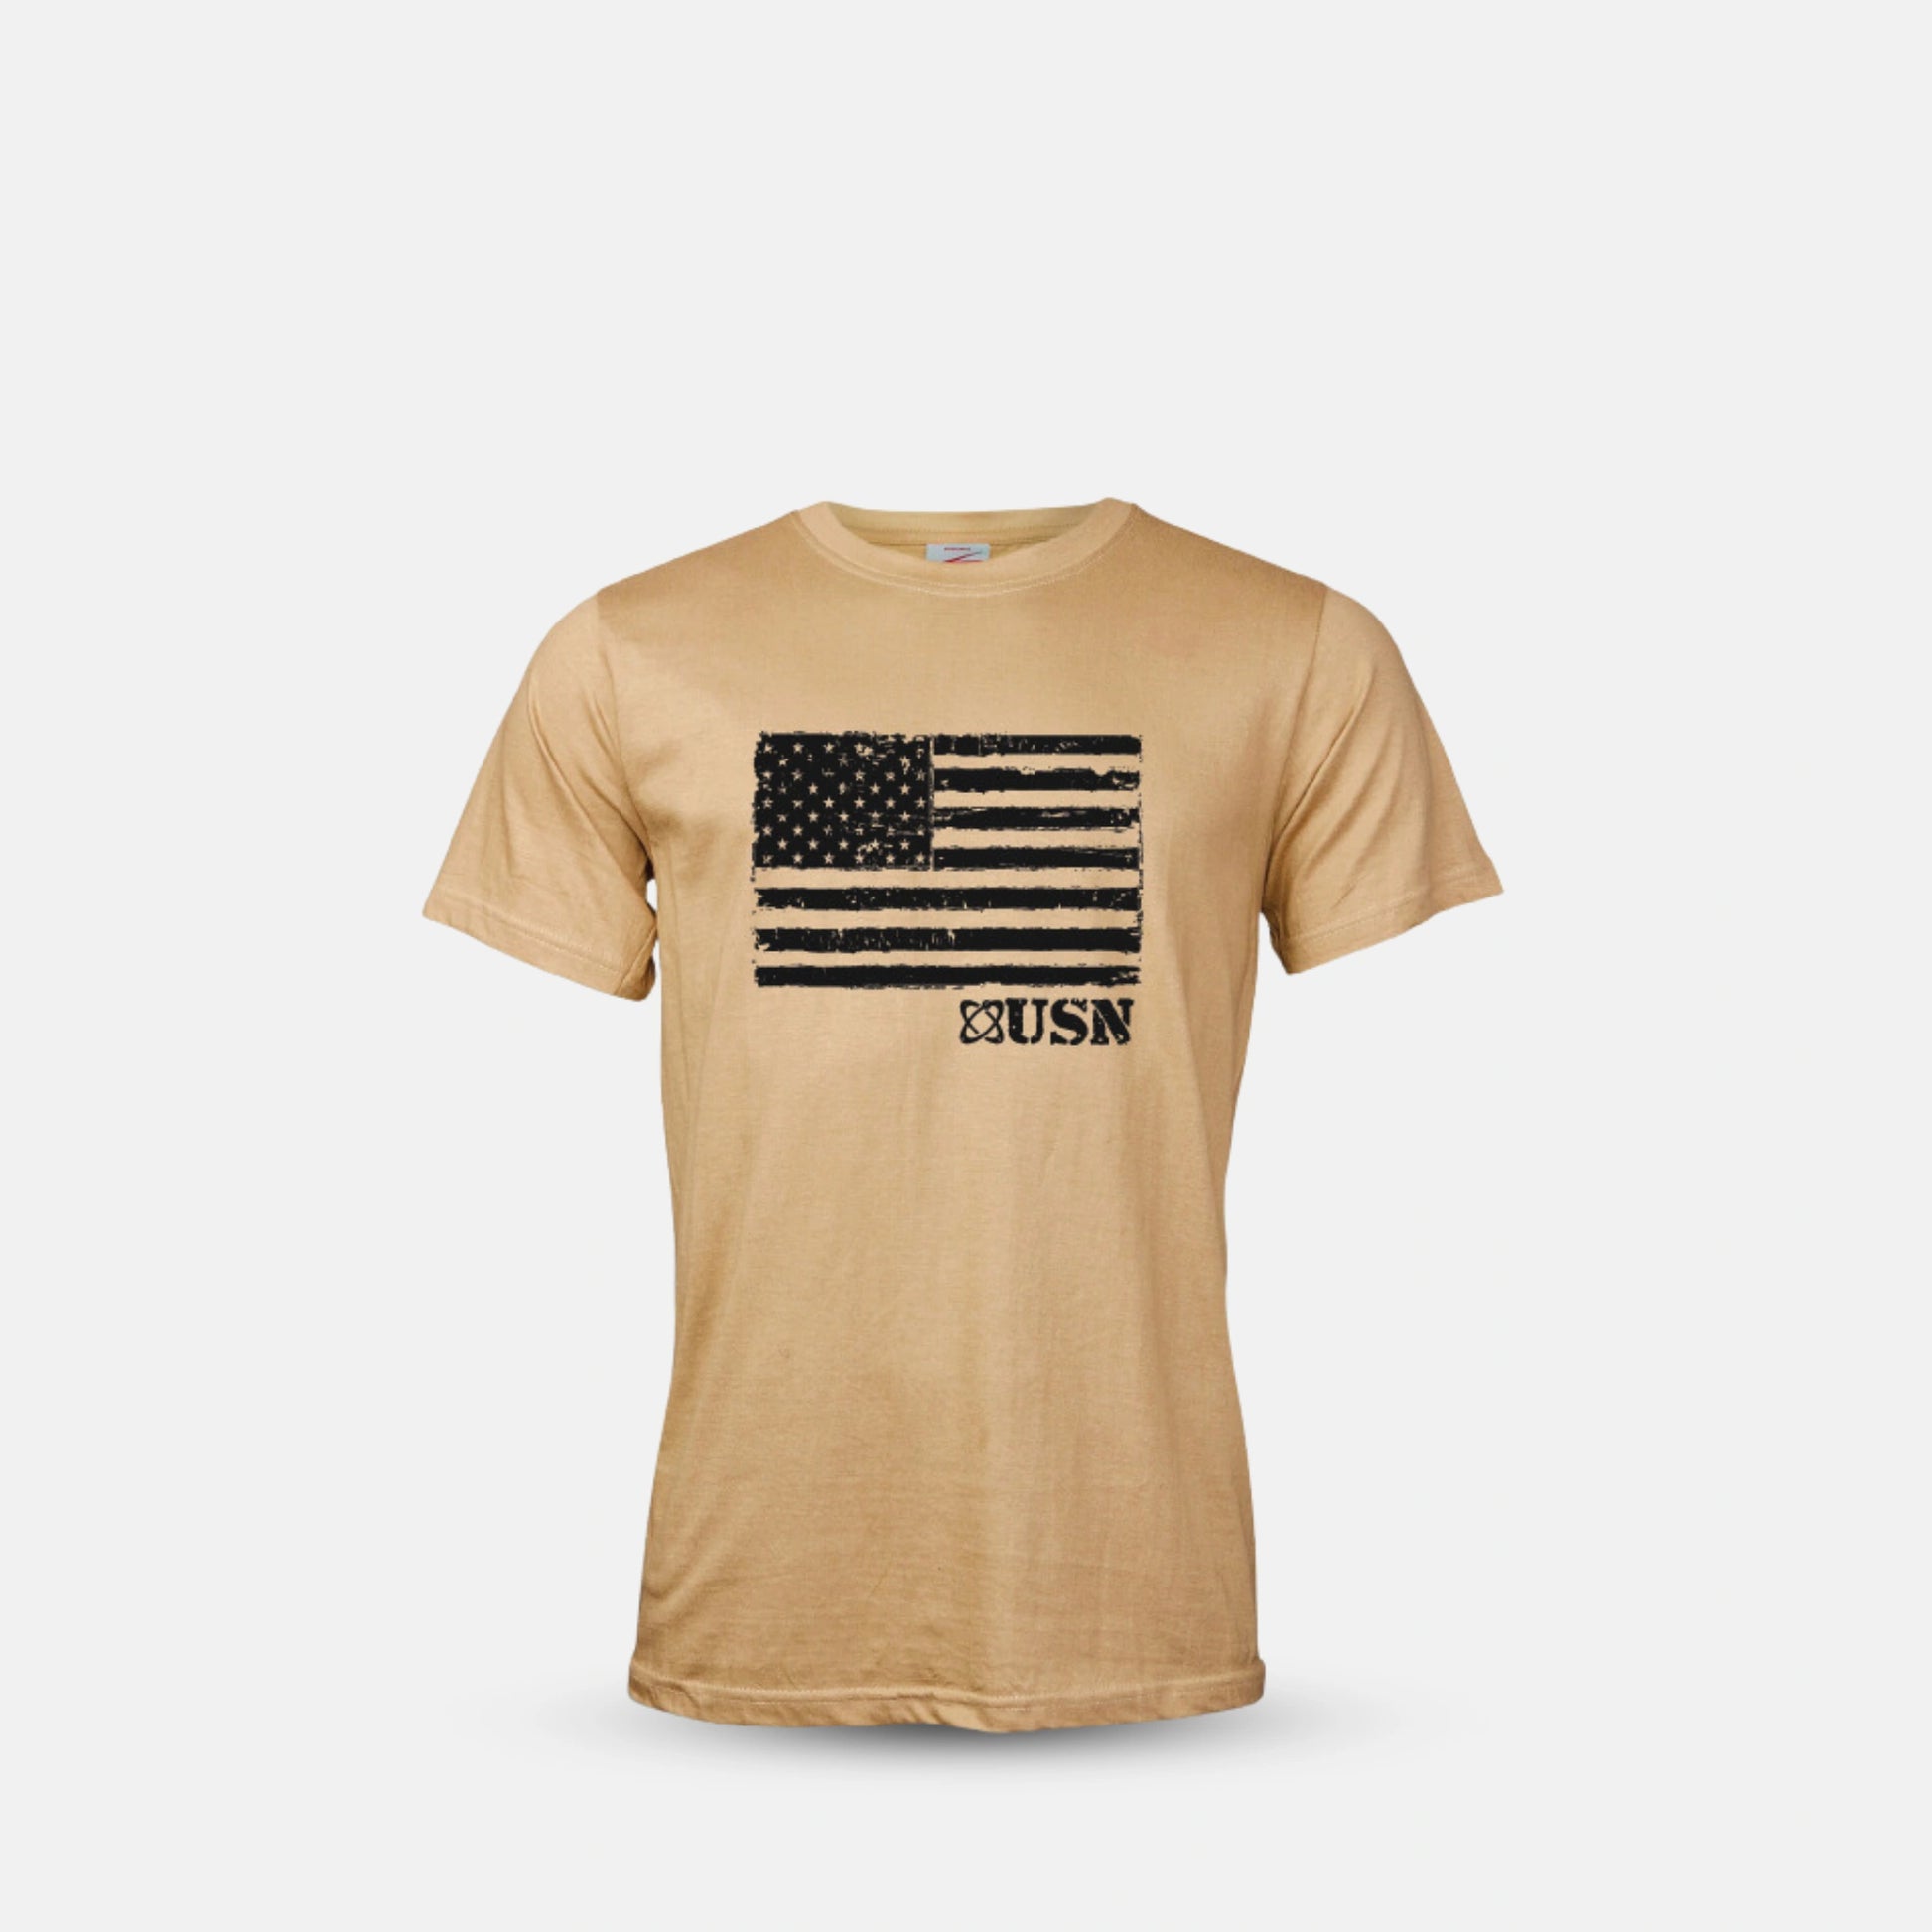 usn-military-shirt-american-flag-khaki